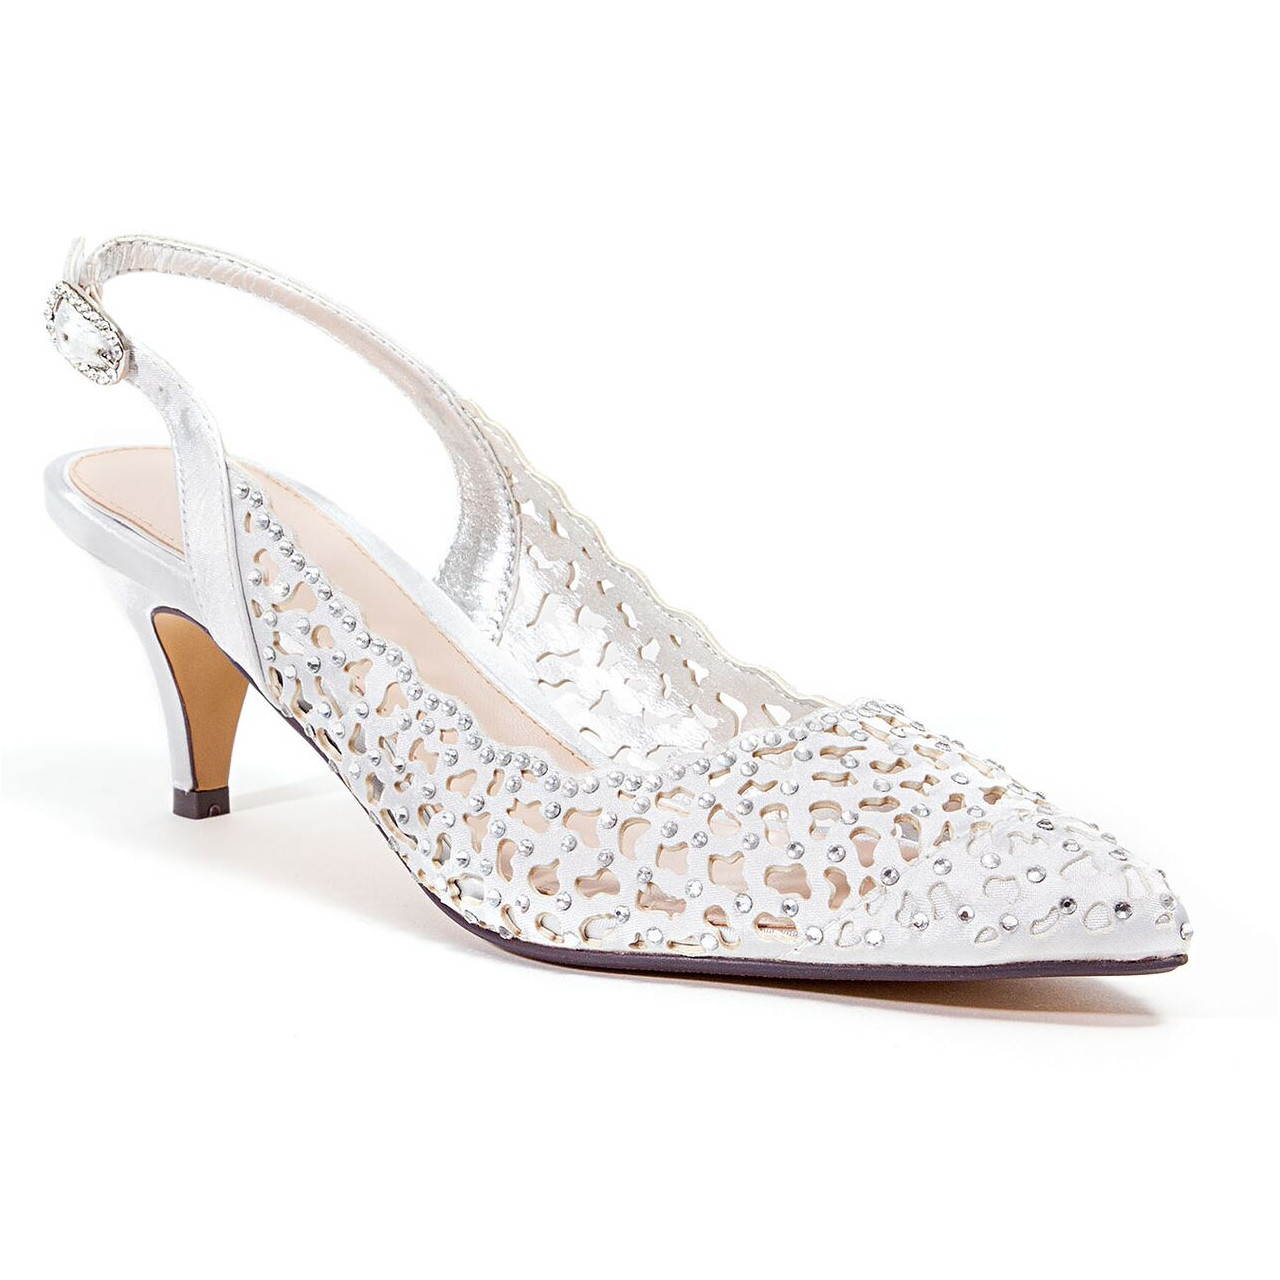 silver embellished heels